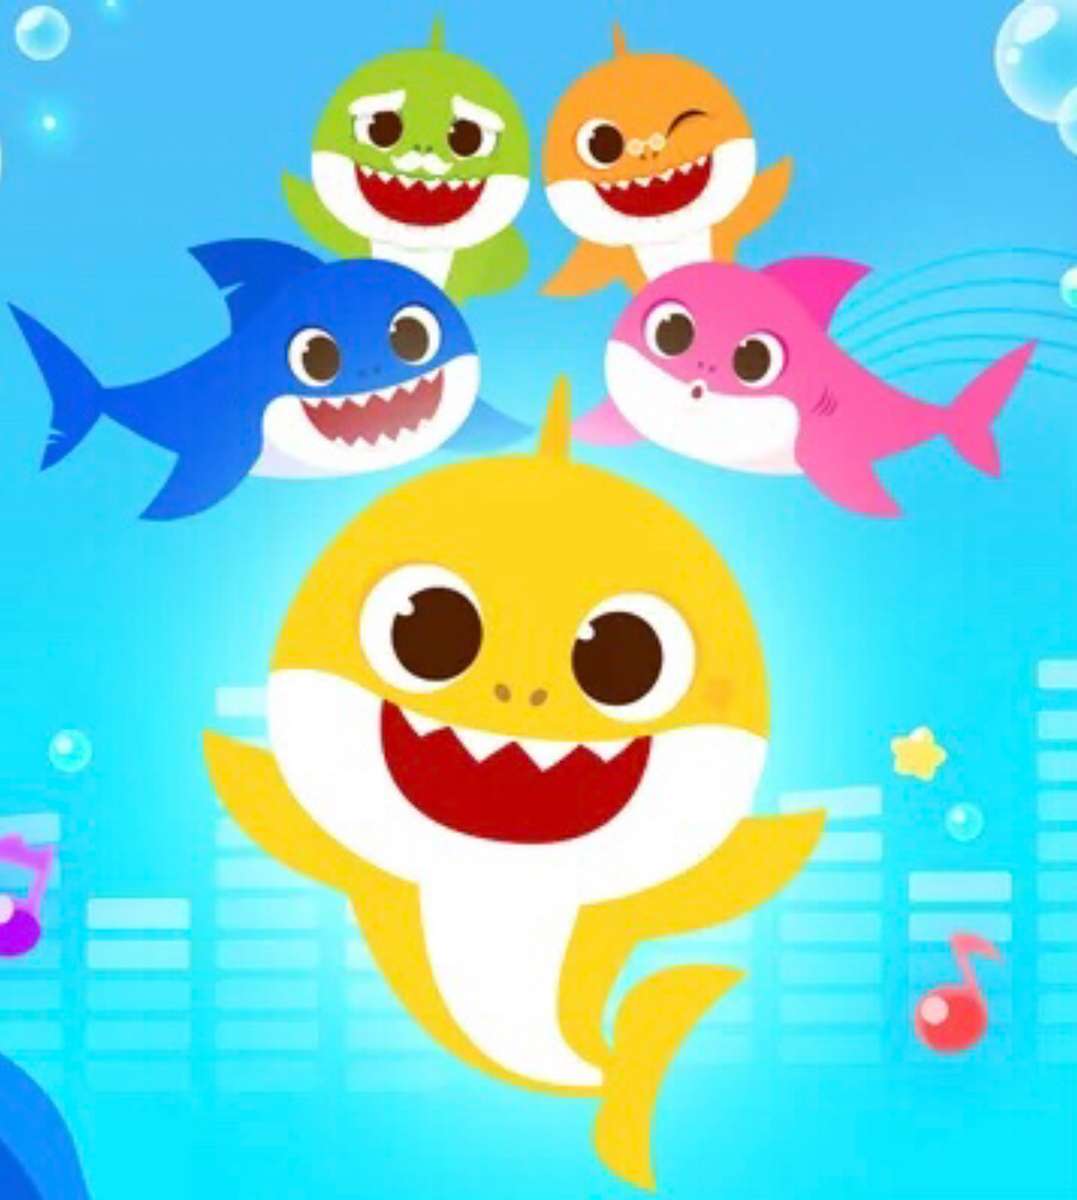 Bébé requin et famille ! ❤️❤️❤️❤️❤️ puzzle en ligne